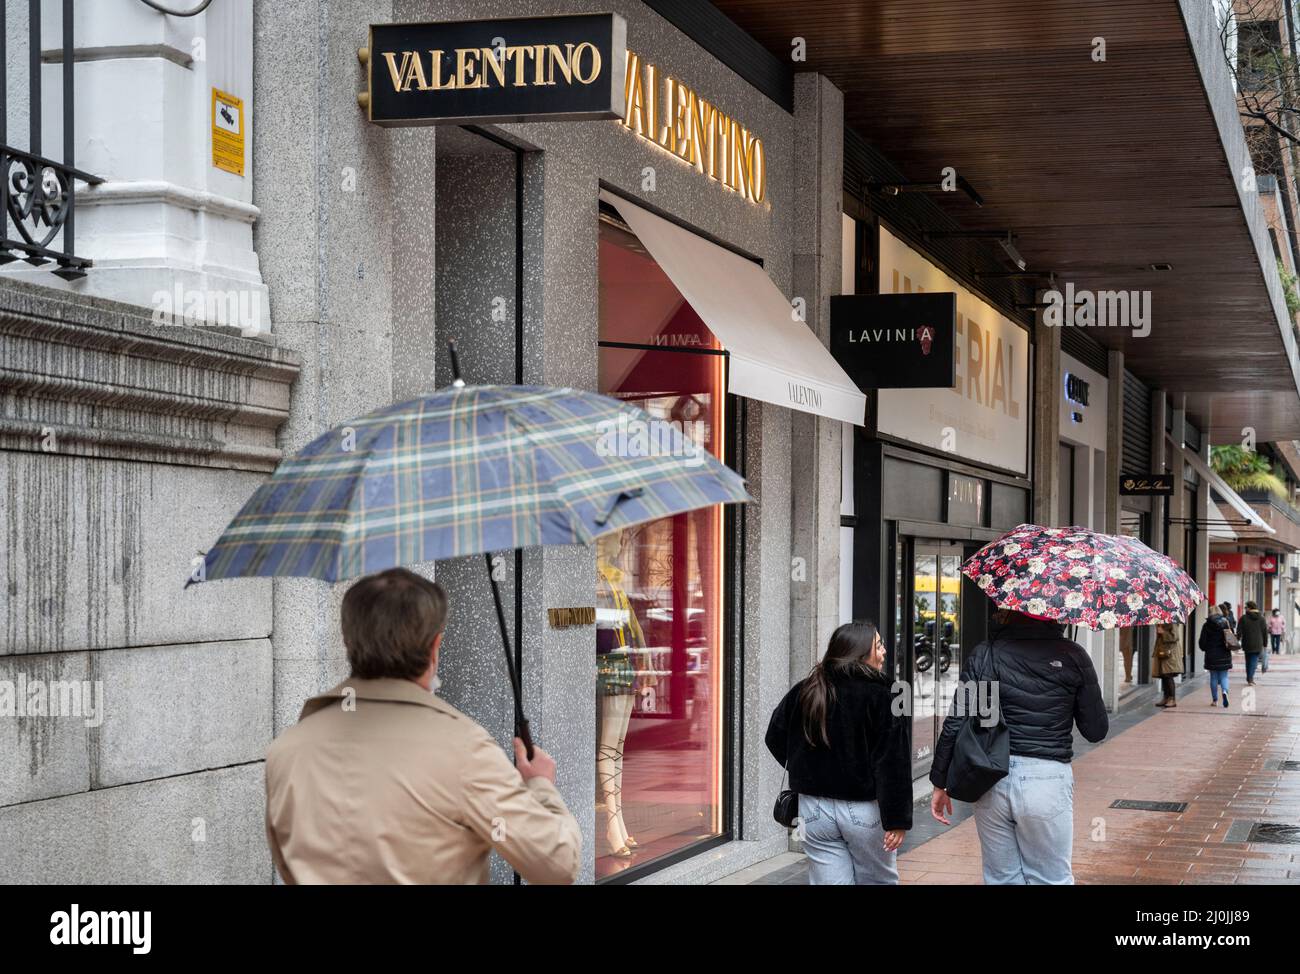 Madrid, España. 3rd Mar, Los peatones pasan por delante de tienda de ropa de moda italiana y cosmética Valentino en España. (Imagen de crédito: © Xavi Lopez/SOPA Images via ZUMA